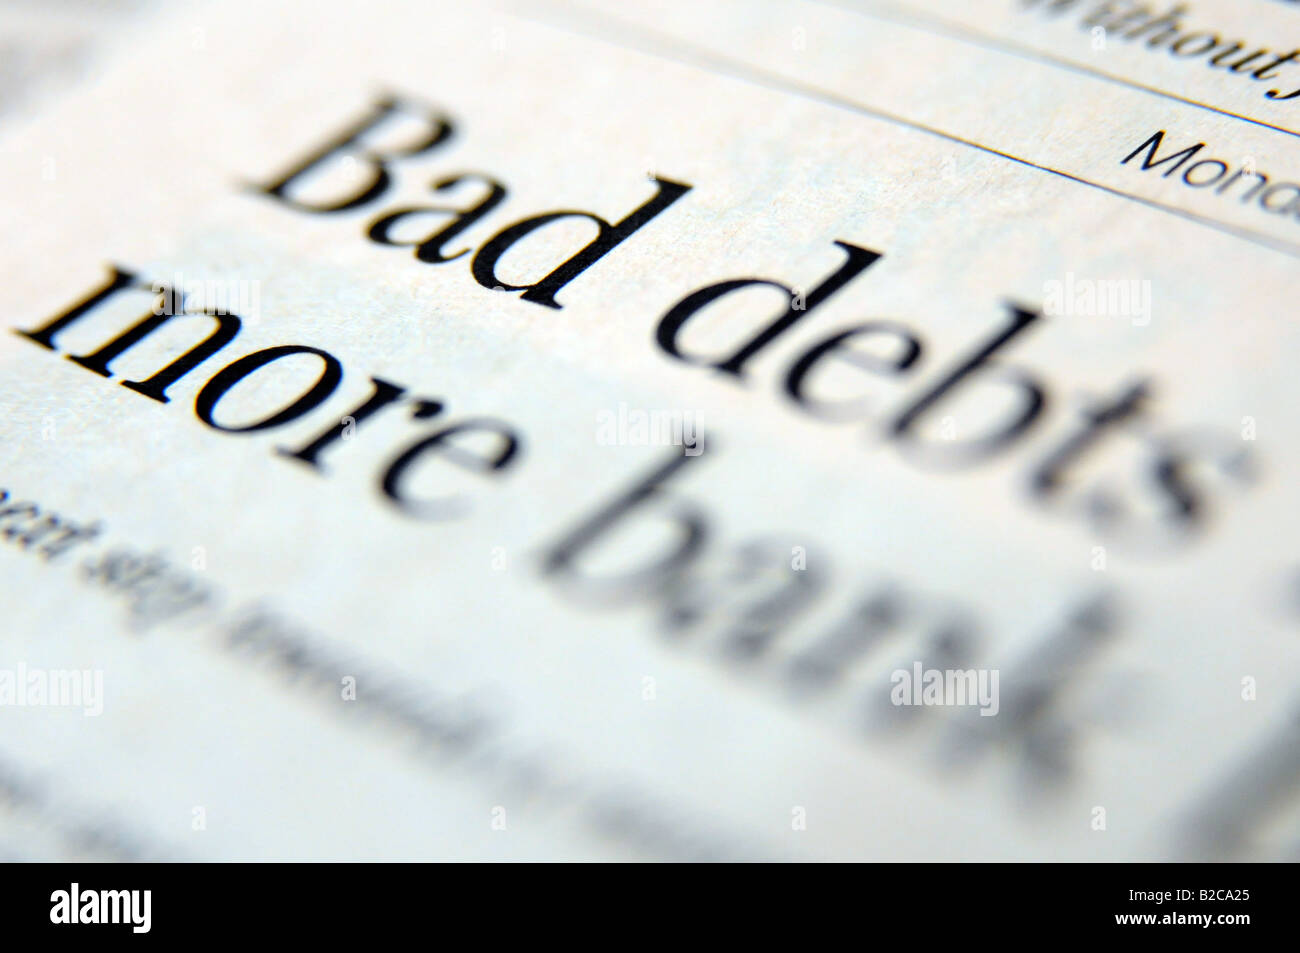 Photographie de gros titre de journal à propos de la crise du crédit et du ralentissement économique et de la récession. Banque D'Images